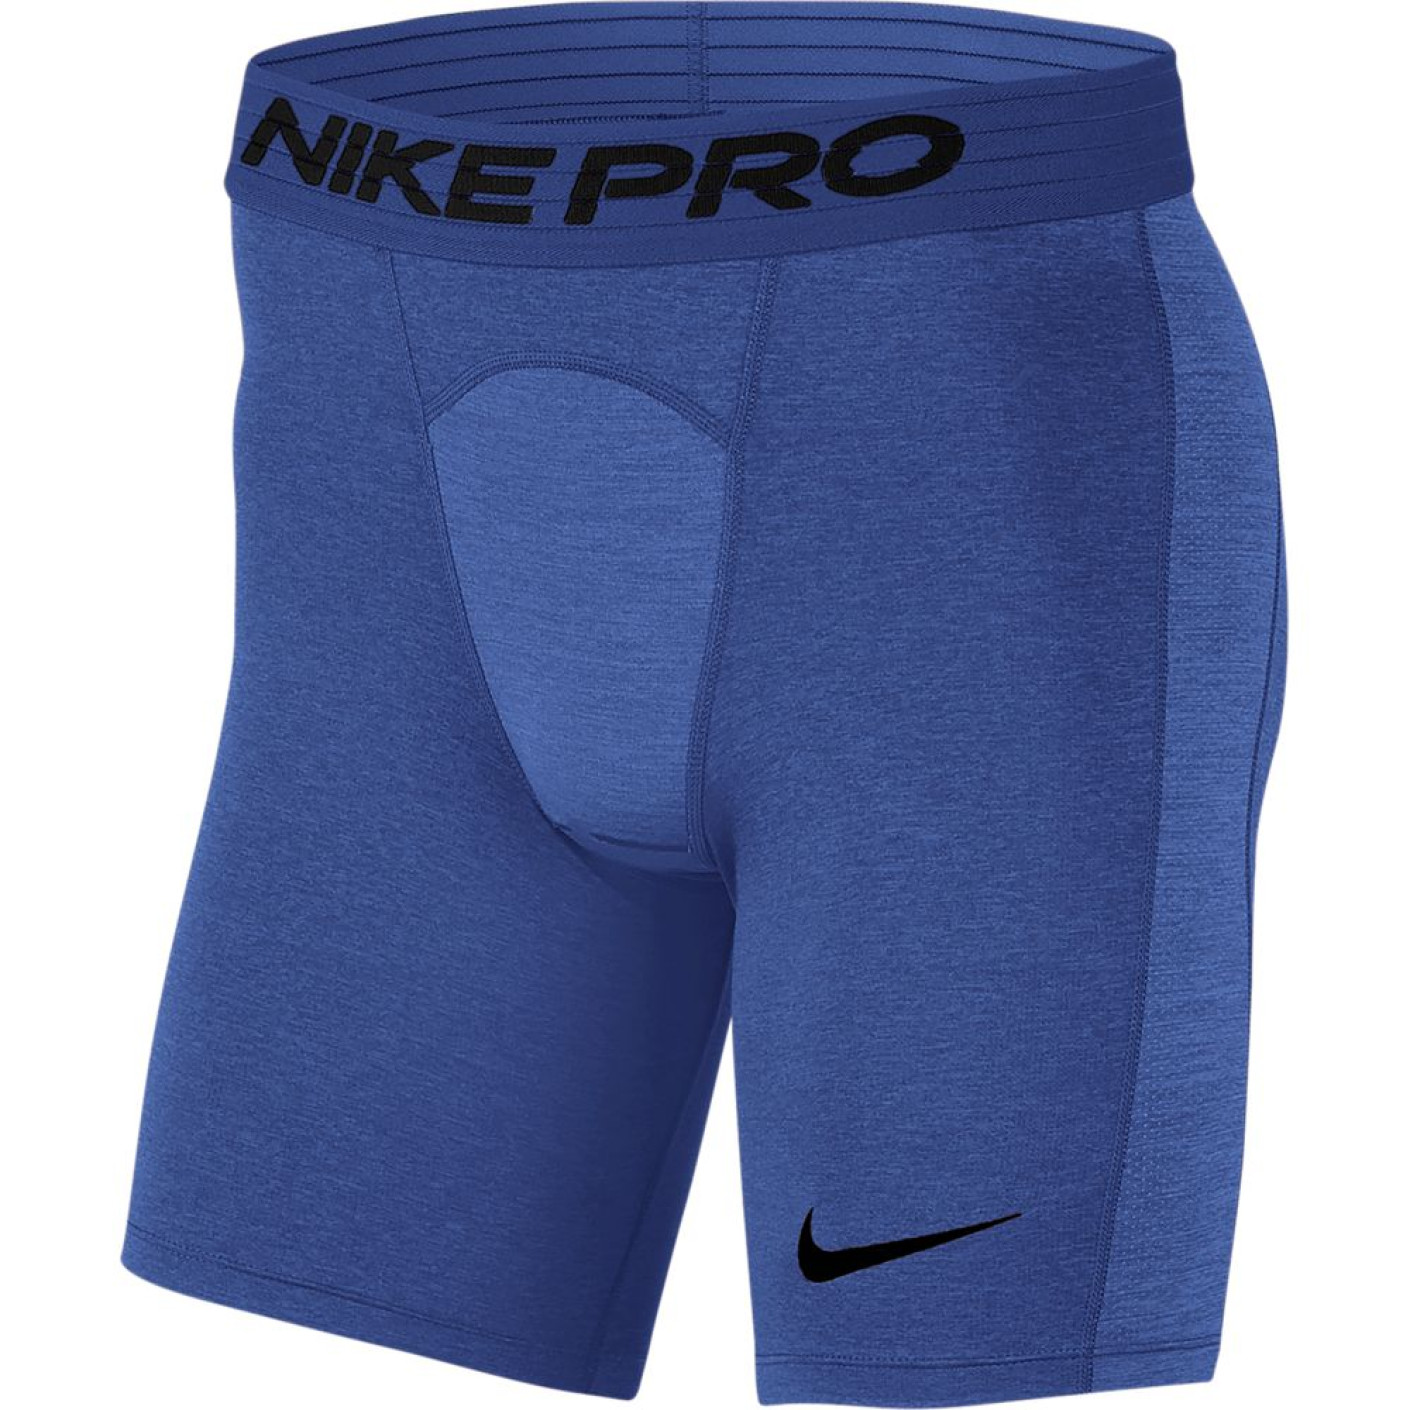 Nike Pro Compressie Slidingbroekje Blauw